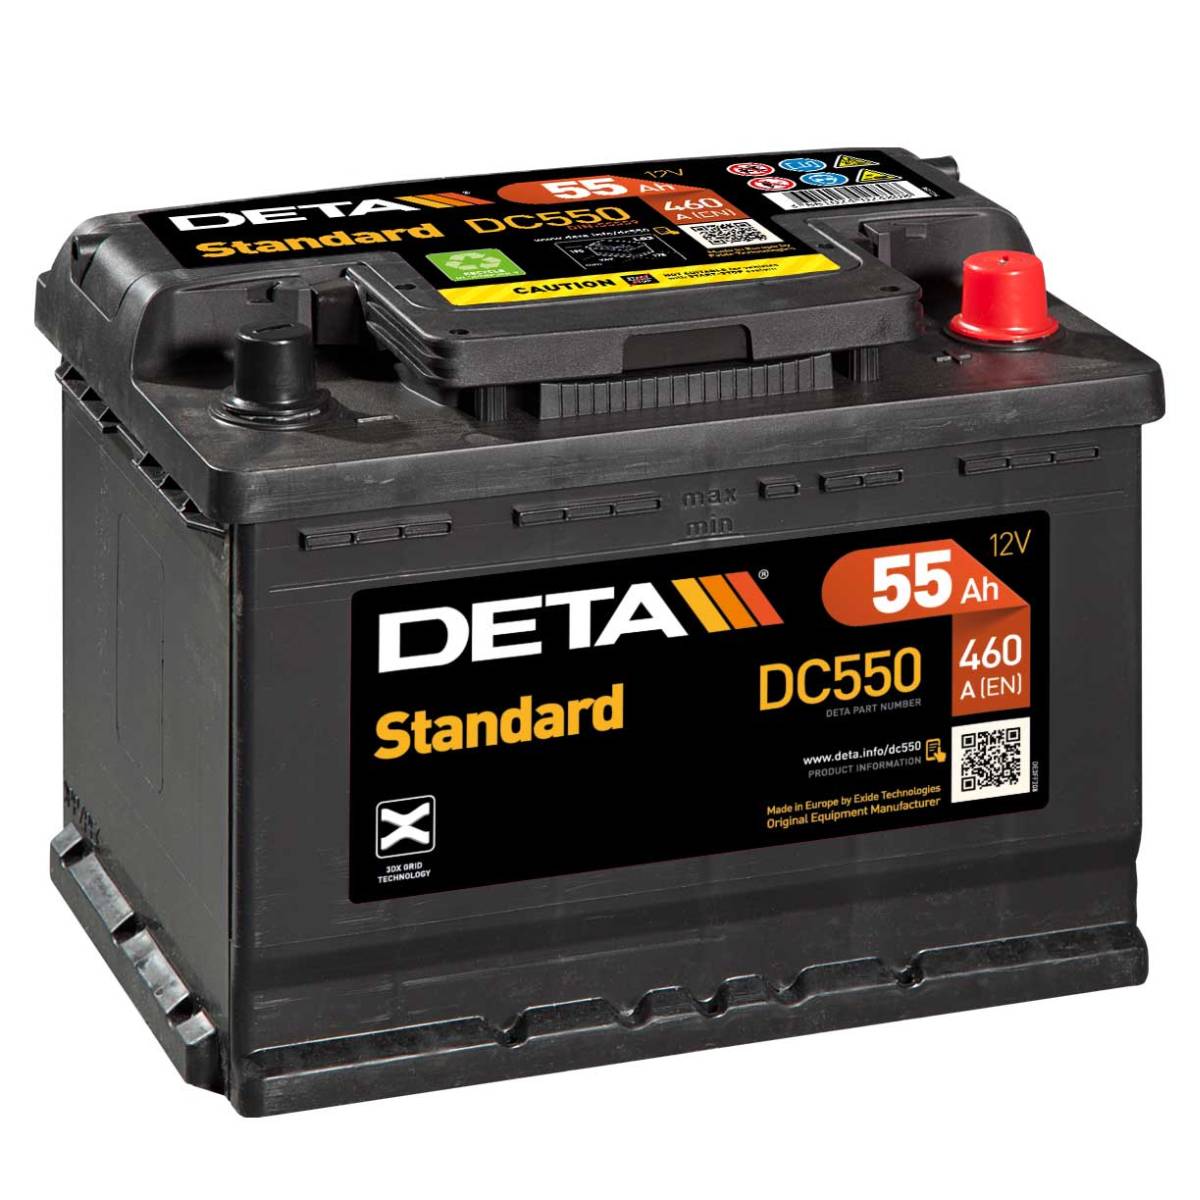 Batteria auto DETA DC550 Standard 12V 55Ah 460A ordina su